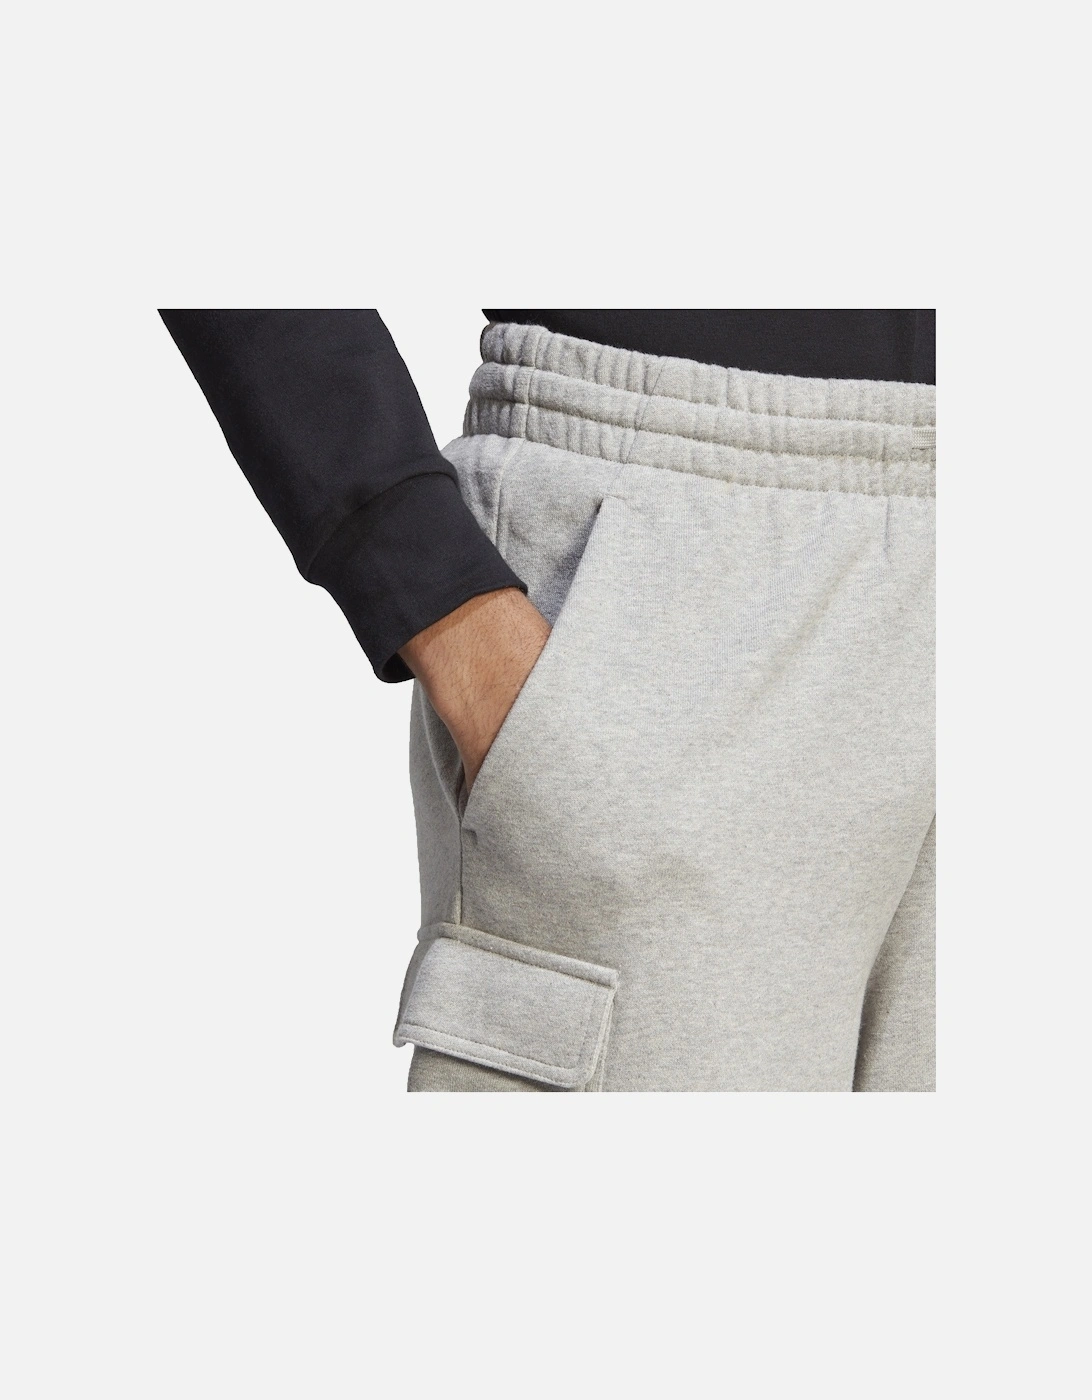 Mens Fleece Cargo Shorts (Grey)